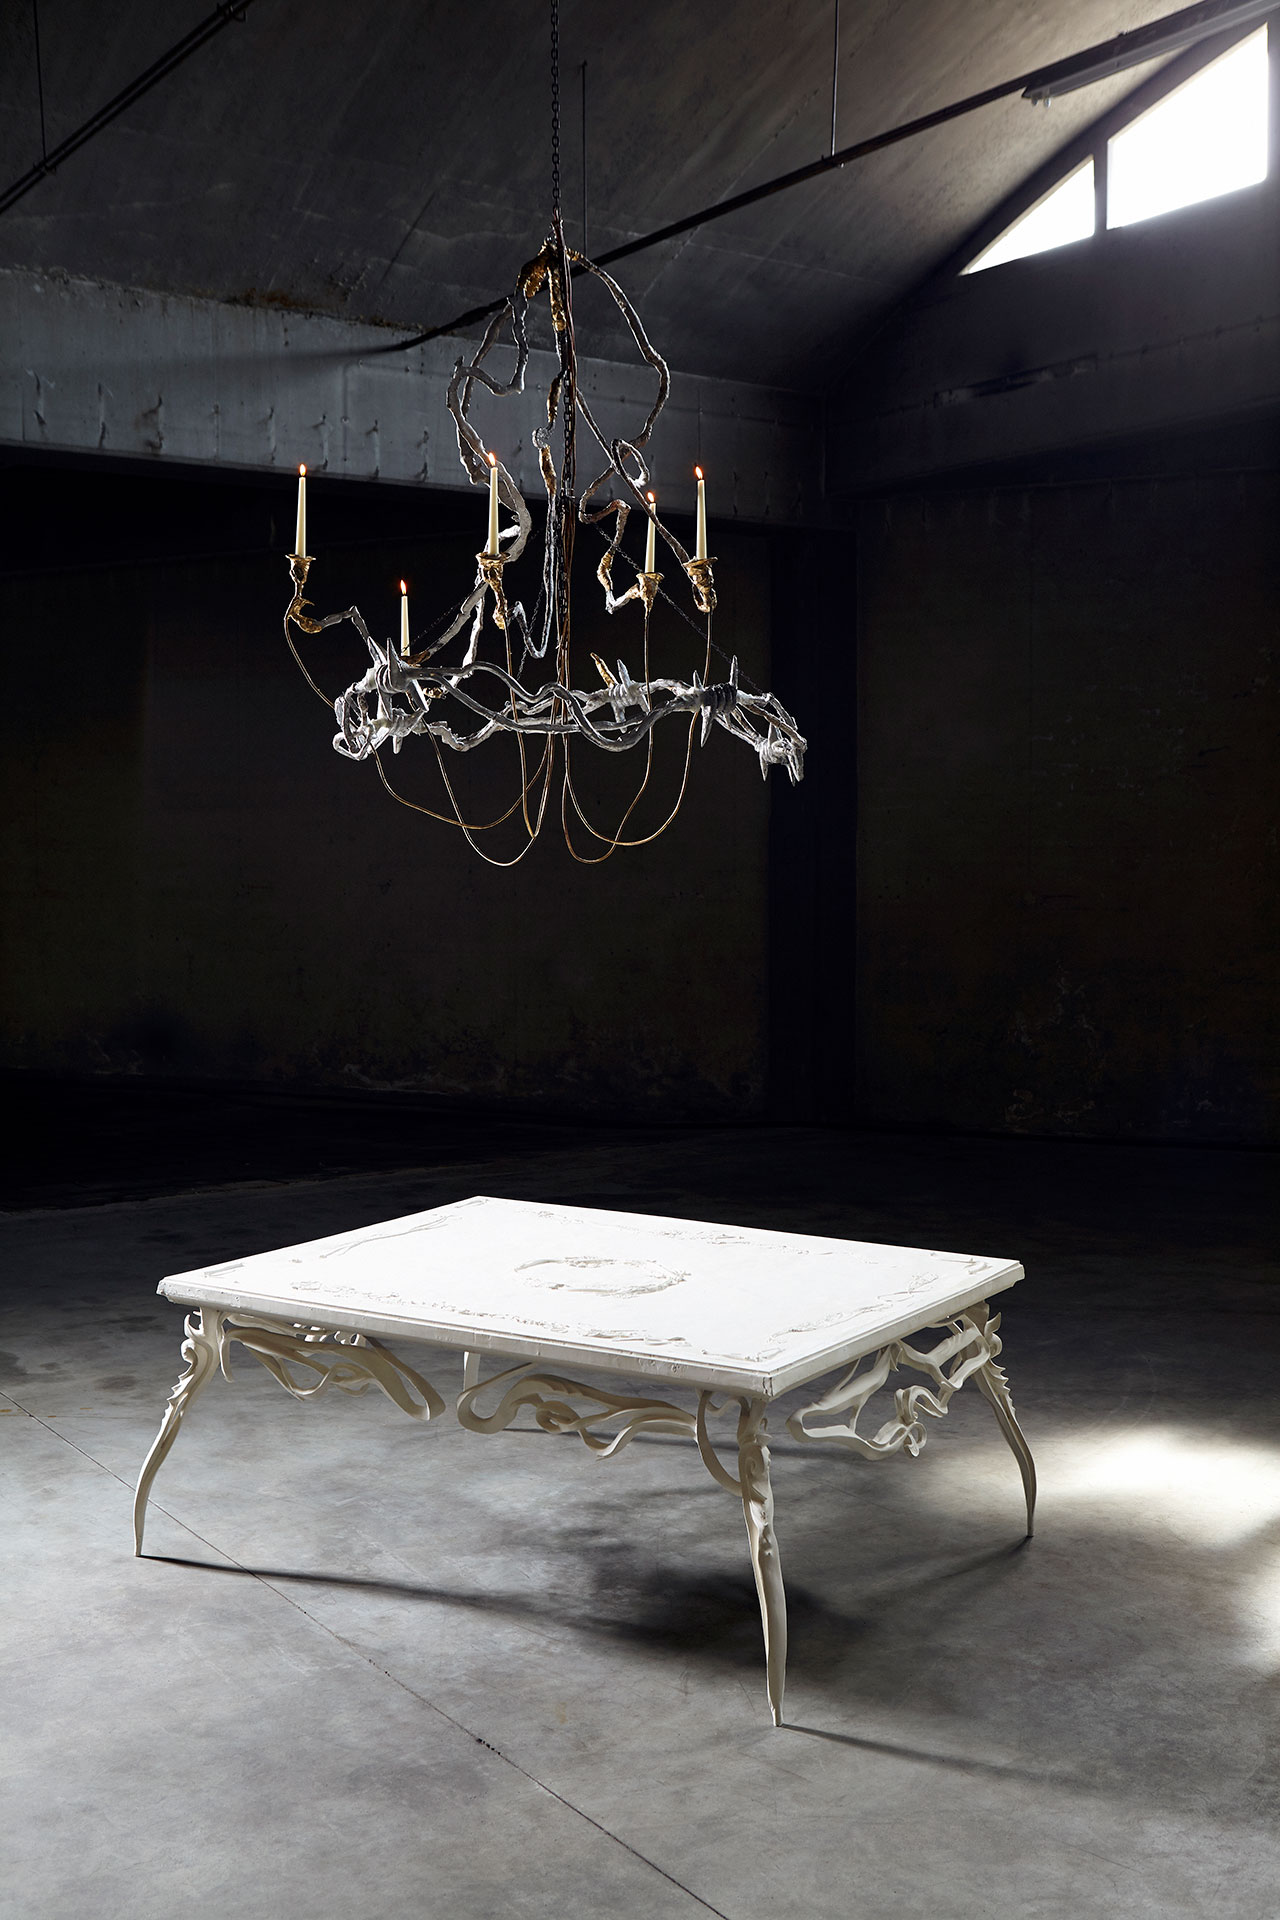 艾蒂安·马克，昨天没有死。 一系列家具，用于调查我们对古董物品的欣赏。 ©埃因霍温设计学院。 照片由 Femke Rijerman 拍摄。 